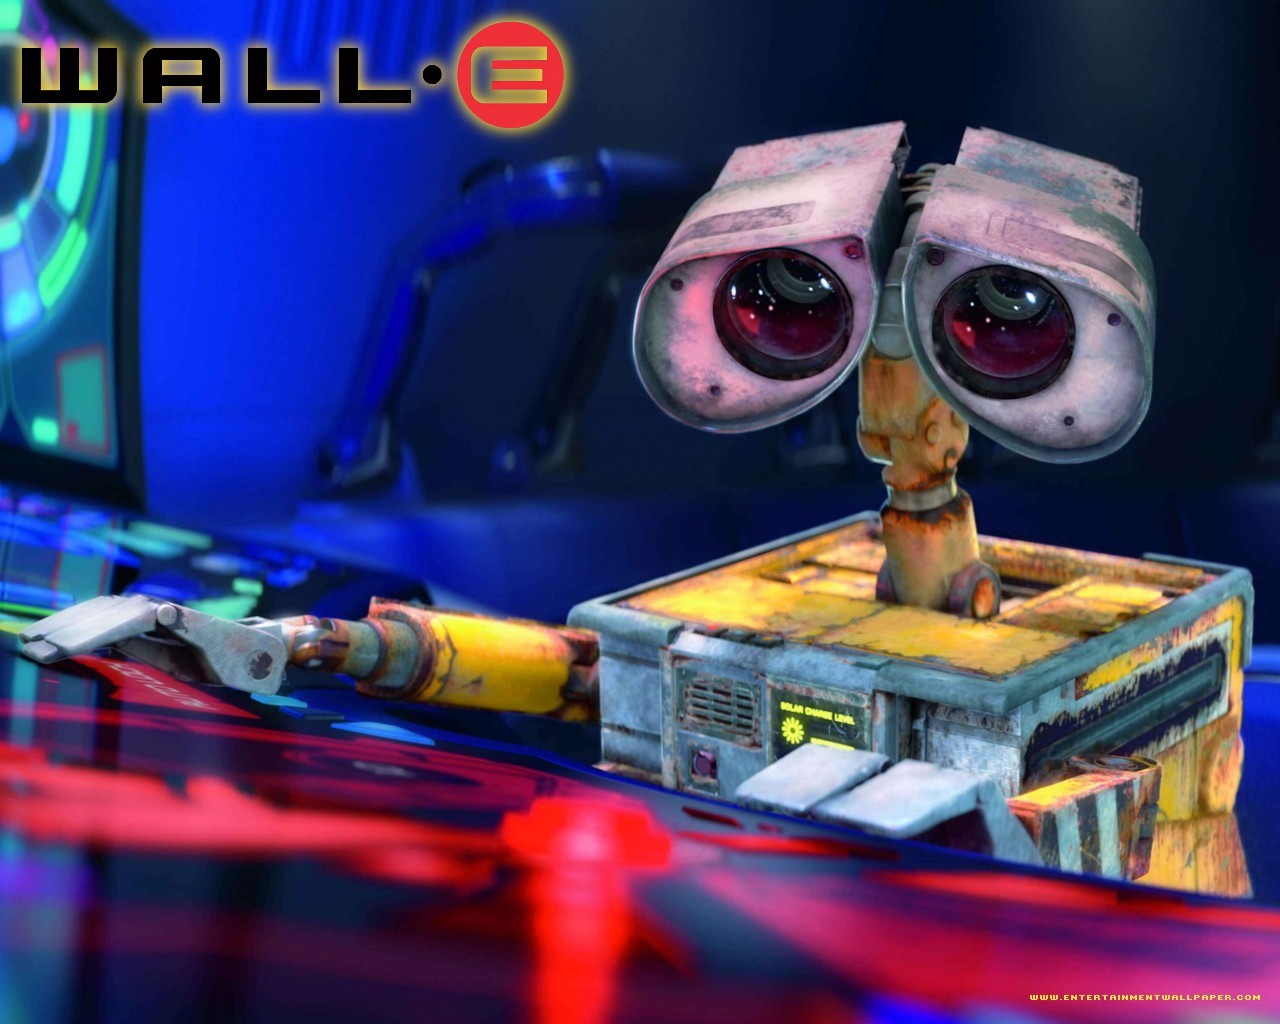 壁纸1280x1024星际总动员 WALL E 迪士尼和皮克斯出品的动画片 壁纸22壁纸 《星际总动员》(WA壁纸 《星际总动员》(WA图片 《星际总动员》(WA素材 影视壁纸 影视图库 影视图片素材桌面壁纸